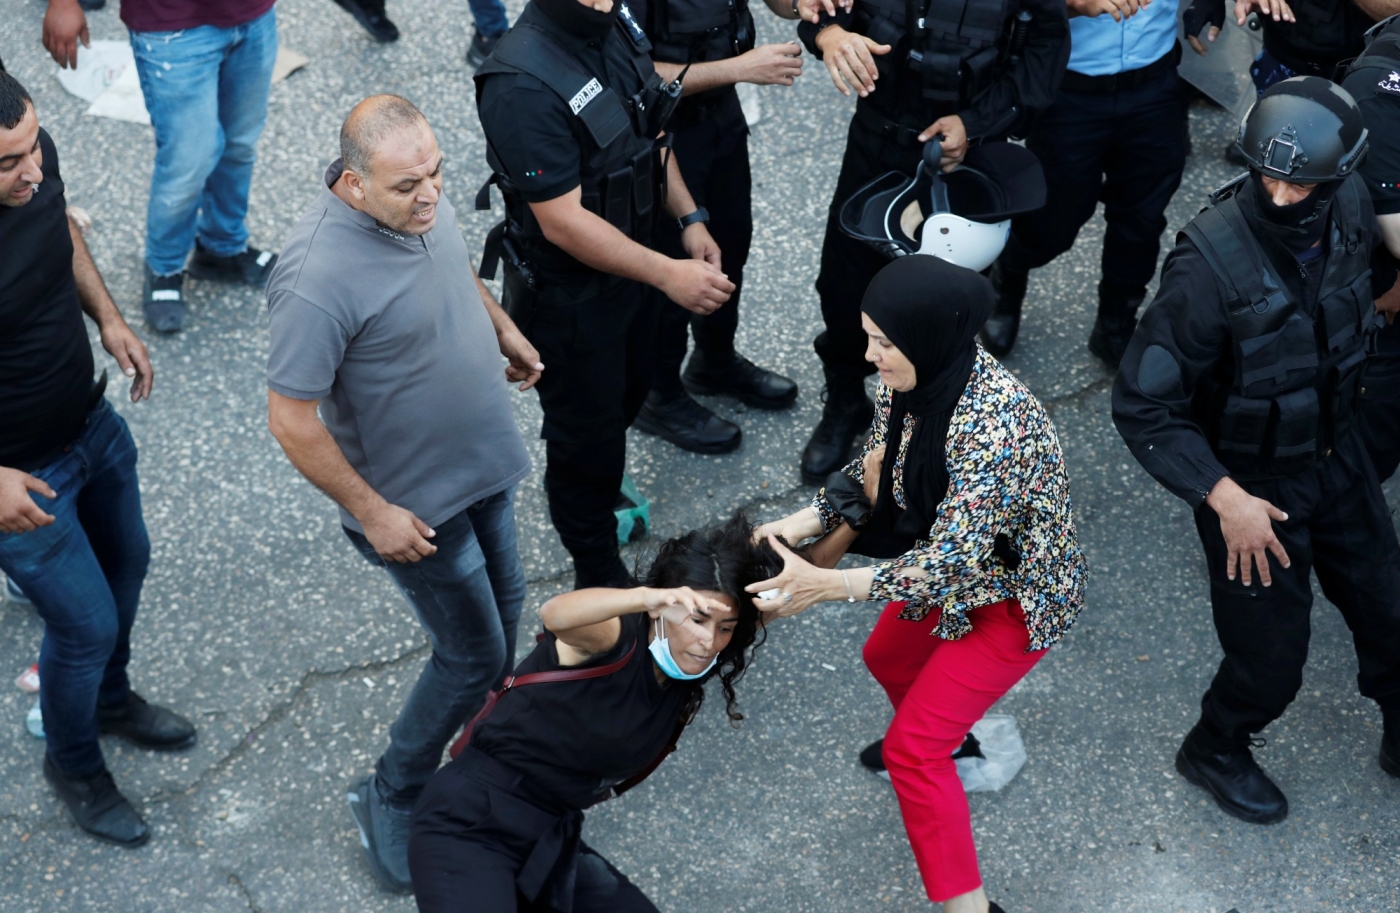 Une manifestante tombe à terre lors d’une échauffourée avec un policier palestinien au cours d’une manifestation en réaction à la mort de Nizar Banat, le 26 juin 2021 à Ramallah, en Cisjordanie occupée (Reuters)